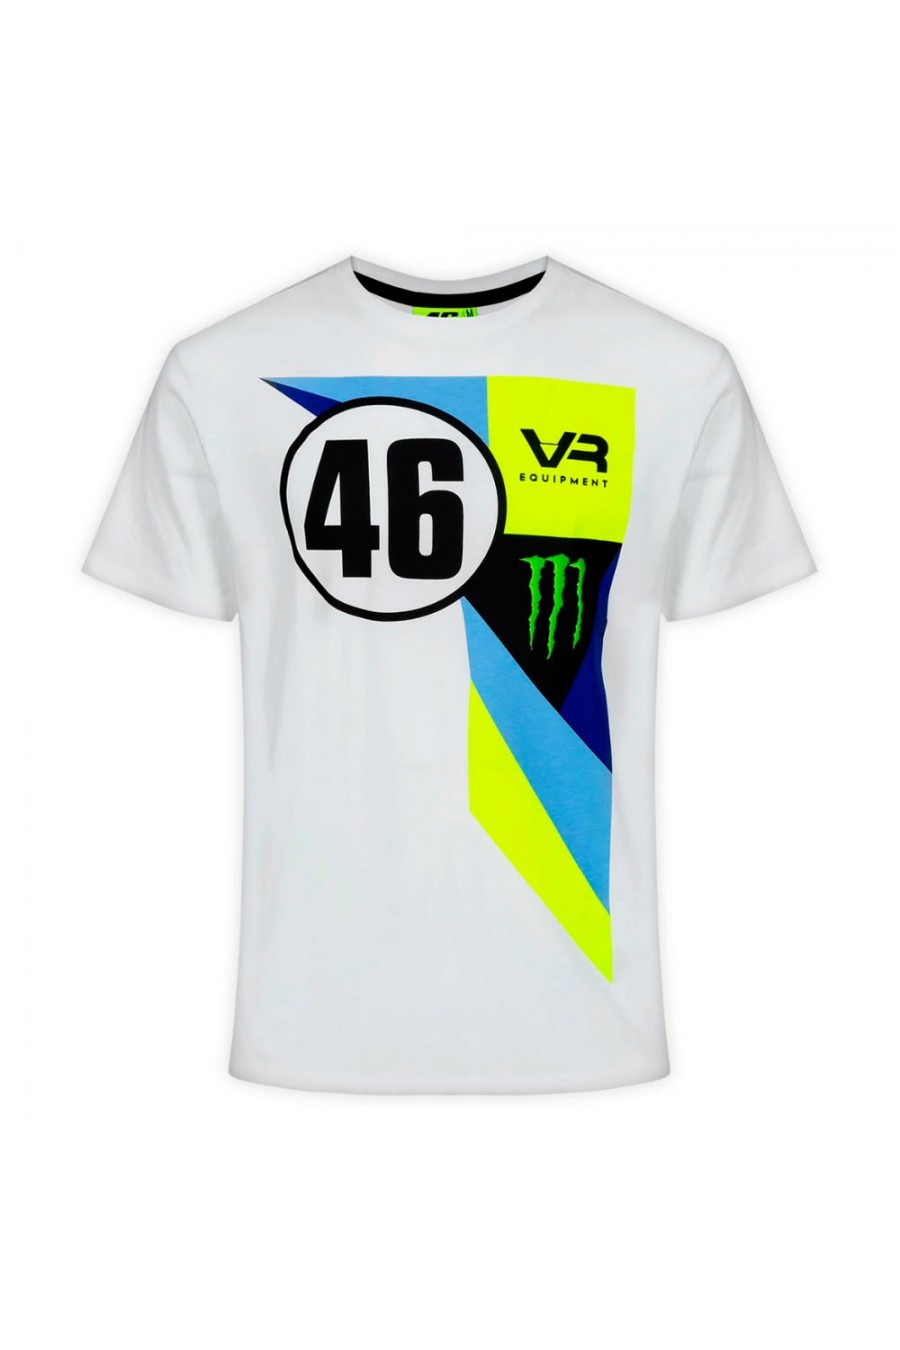 Camiseta Valentino Rossi 46 Abu Dhabi Valentino Rossi - 46 - 1